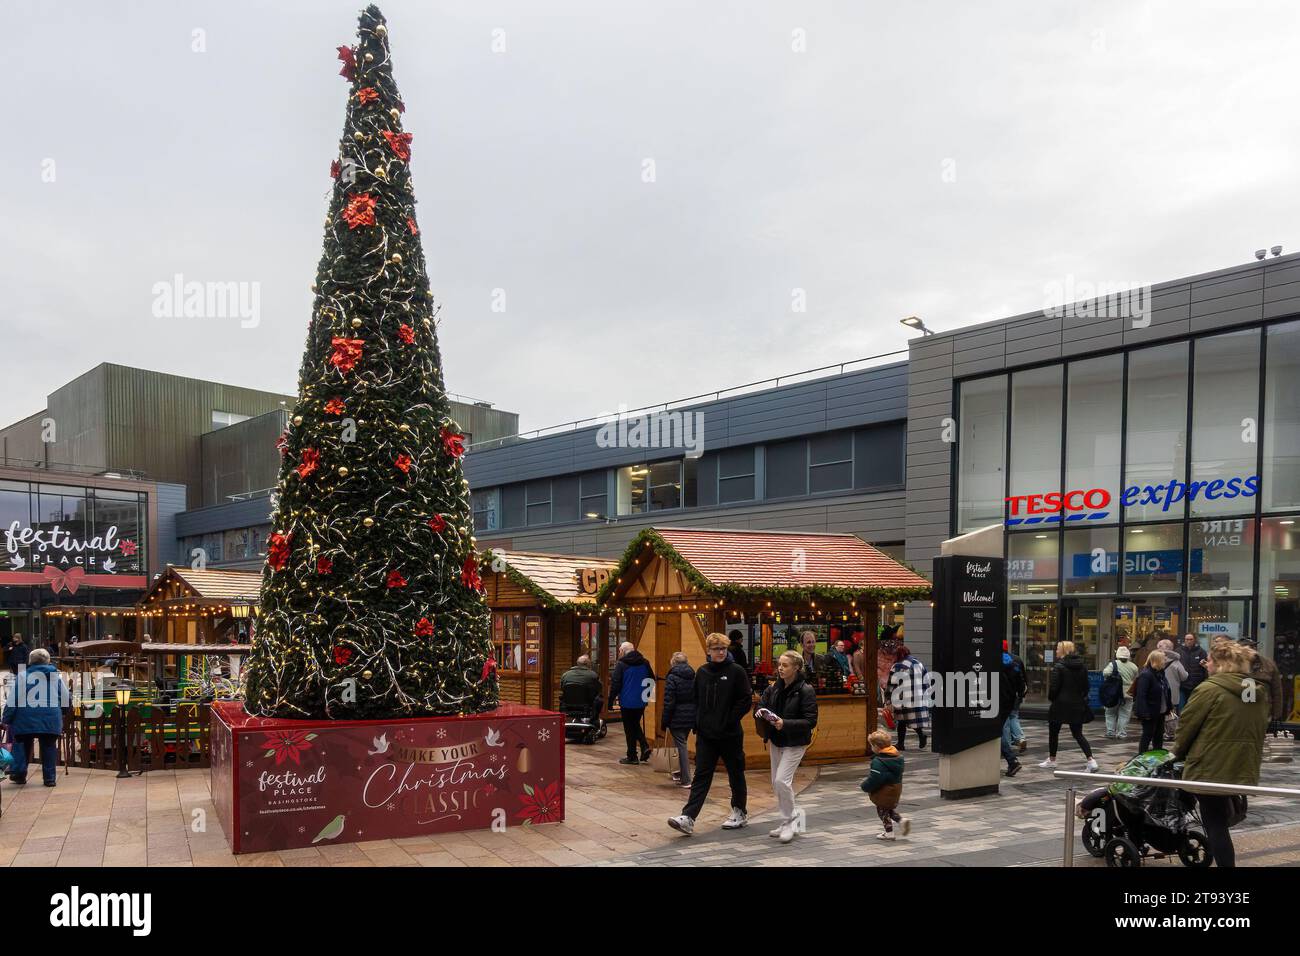 Festival Place Shopping Centre at Christmas, Basingstoke Town Centre, Hampshire, England, UK. Weihnachtsmarkt-Stände und geschmückter Weihnachtsbaum Stockfoto